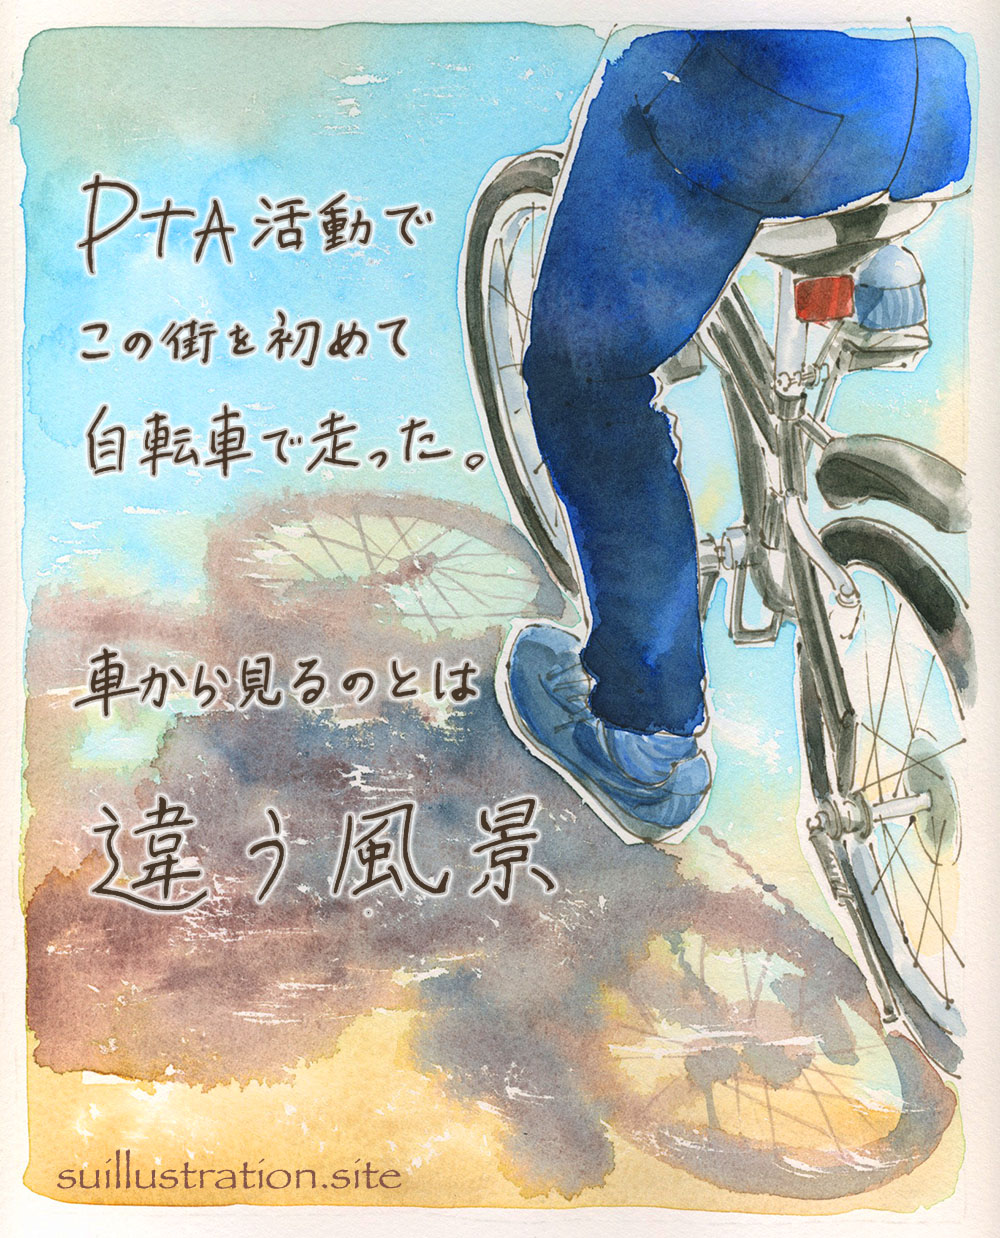 PTAサイクリング